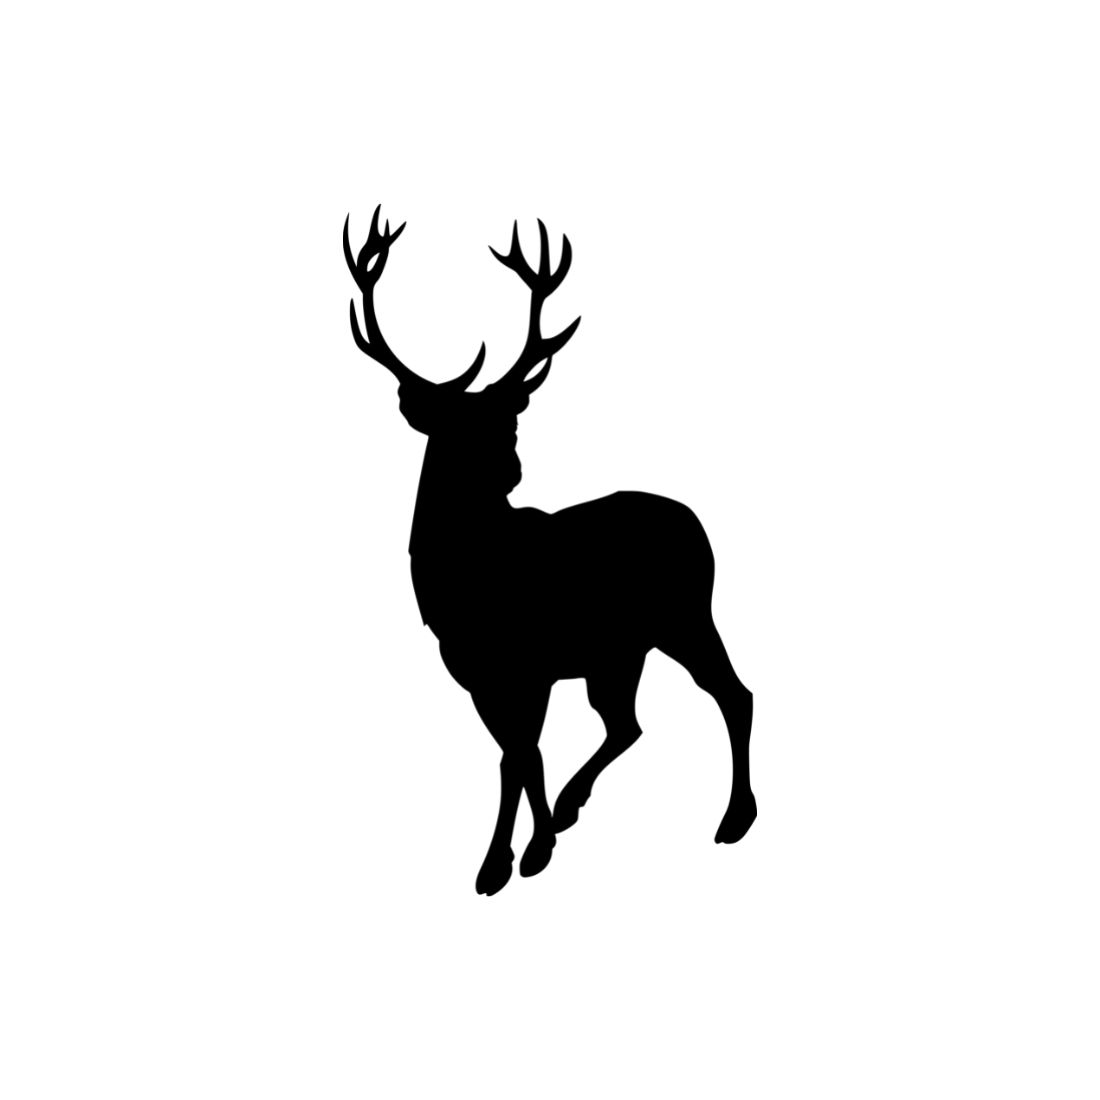 Deer Silhouette Bundles previews.